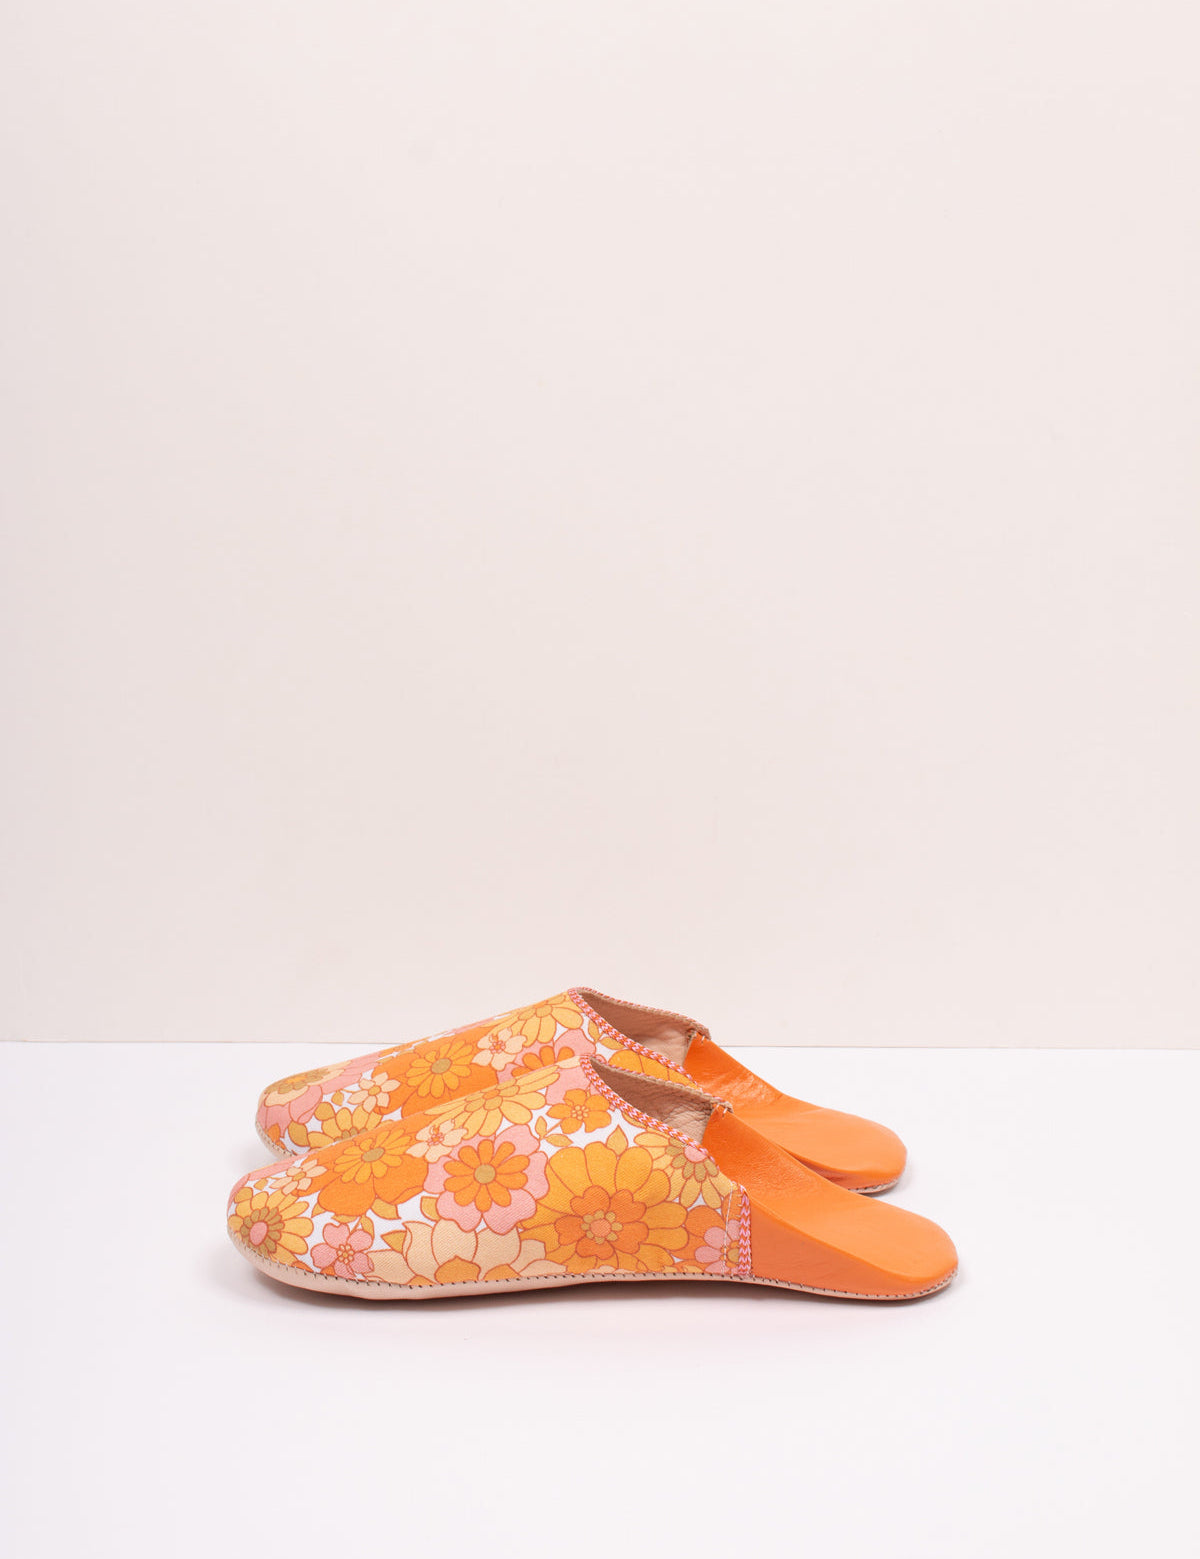 Margot-Floral-Babouche-Slippers-tangerine-BohemiaDesign-4.jpg